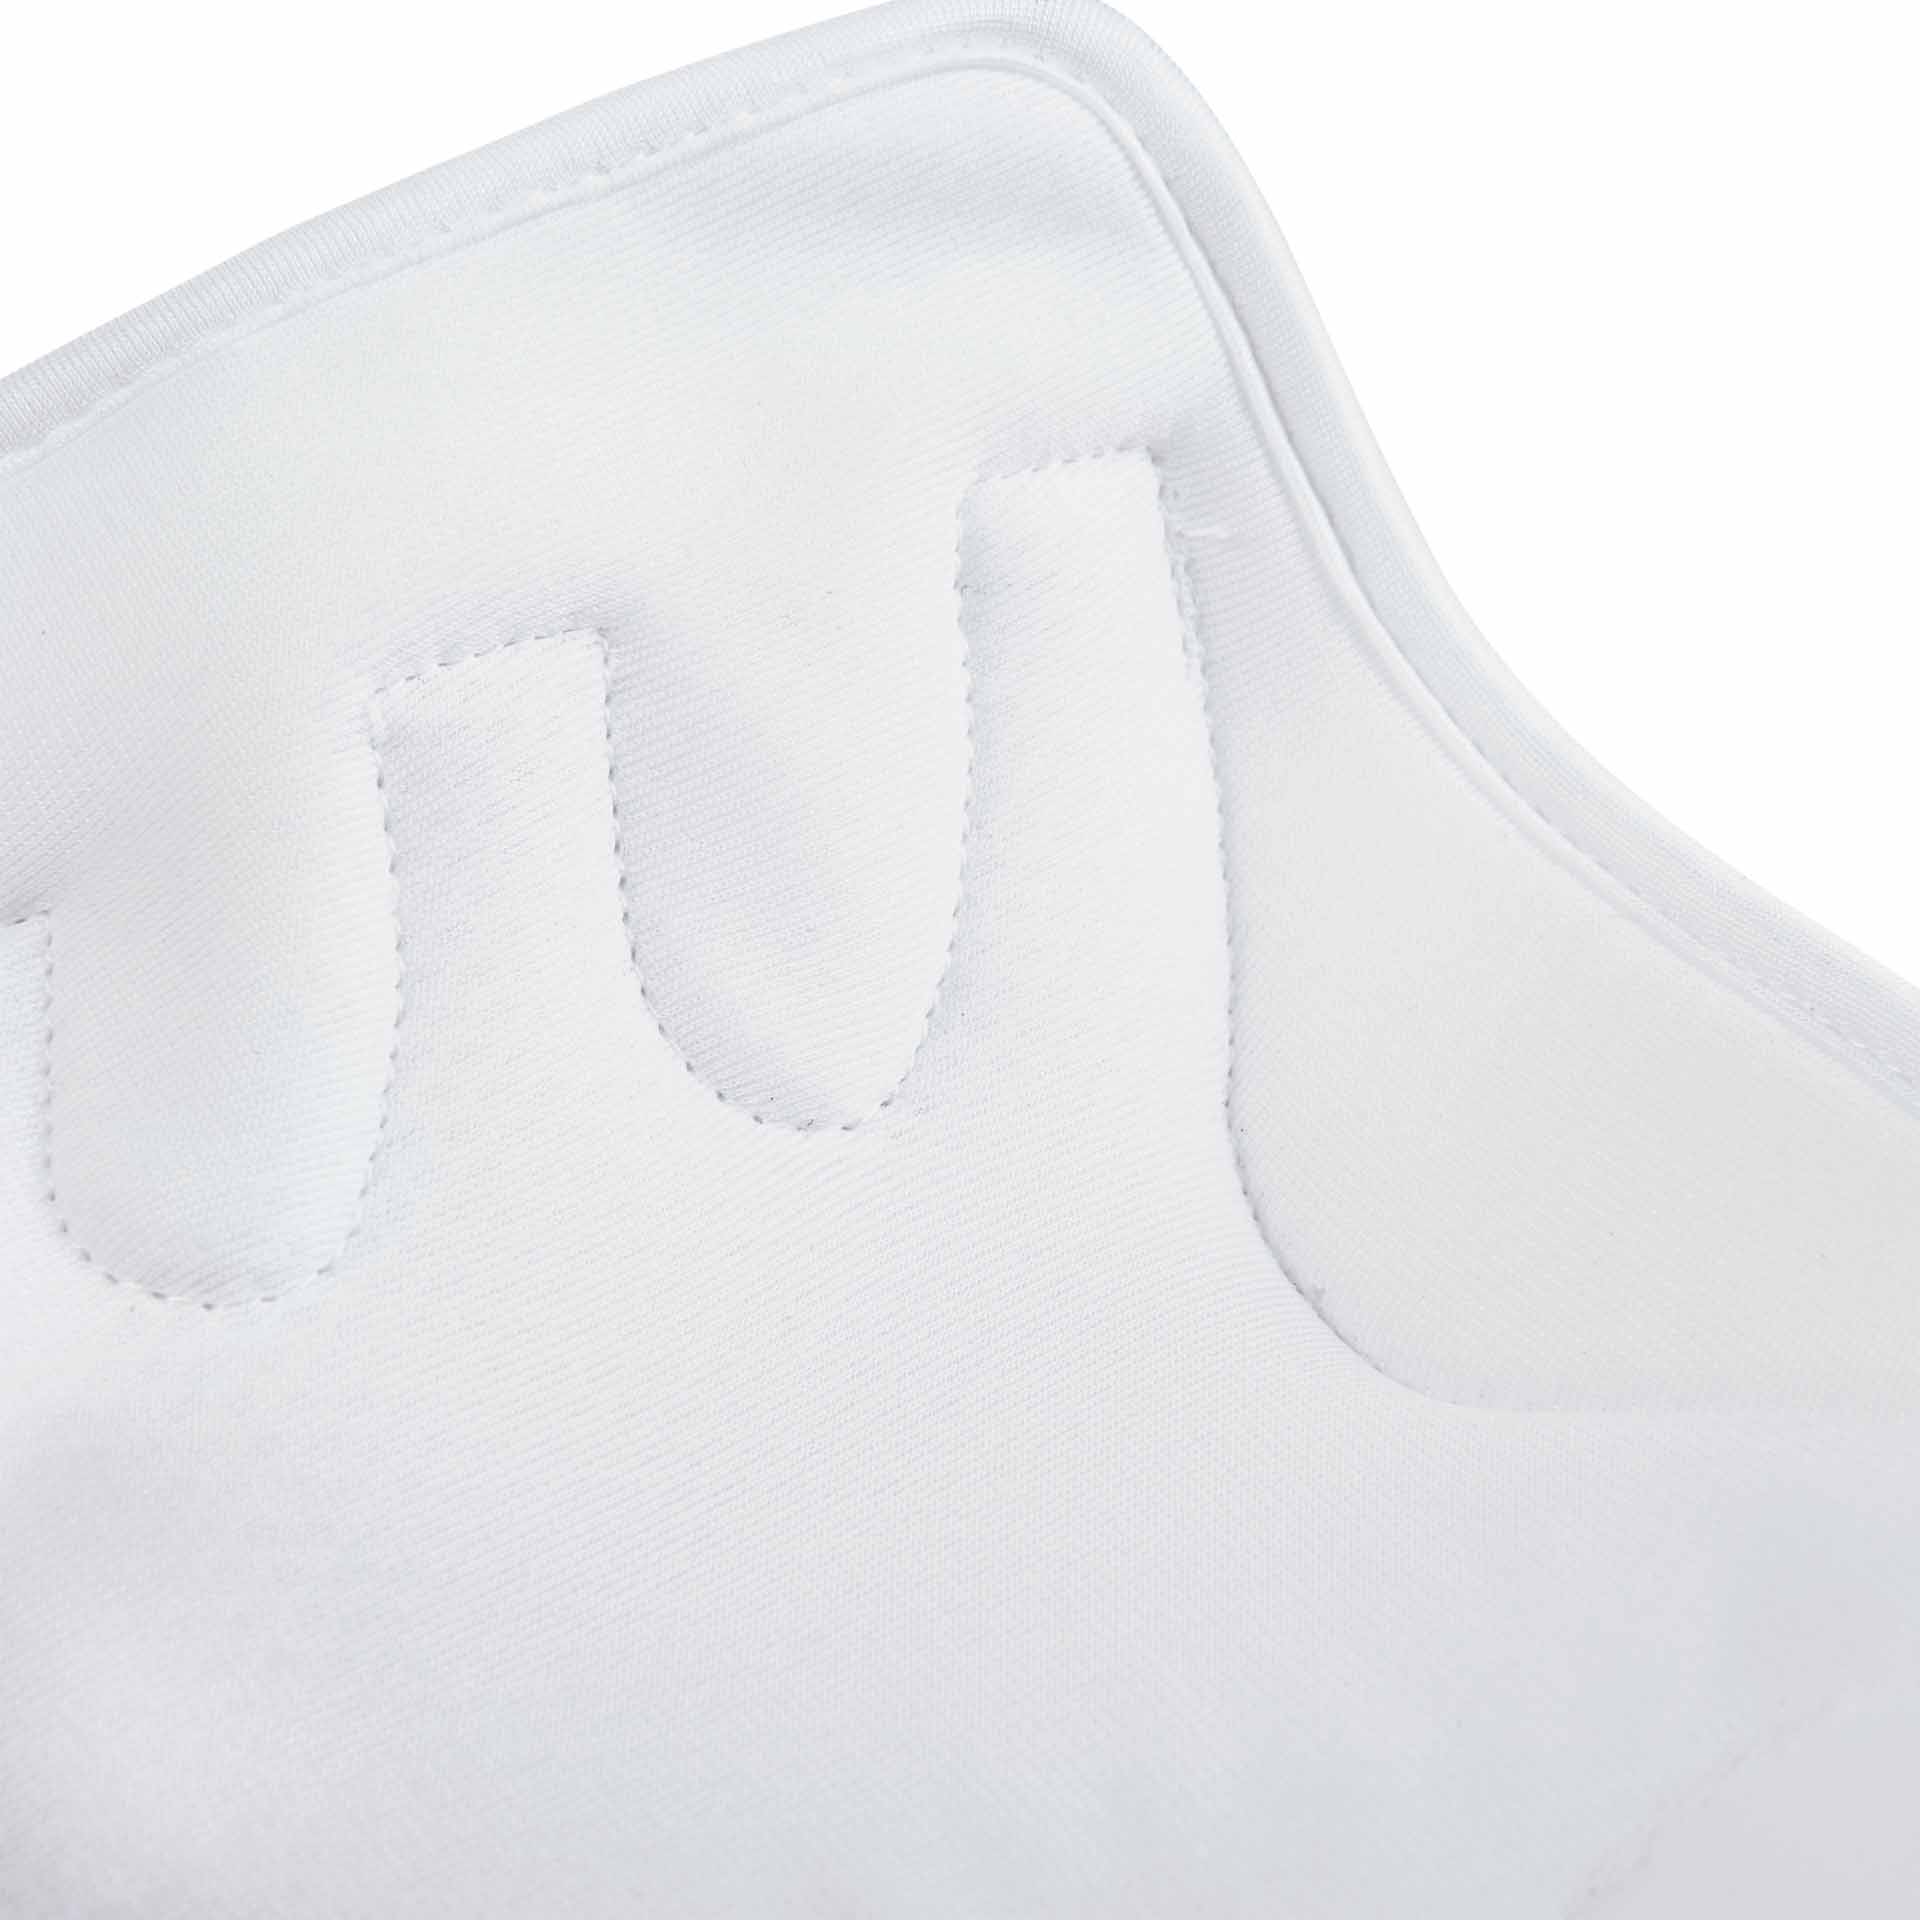 BUSSE Tendon Boots DRESSAGE-PRO-MESH S white